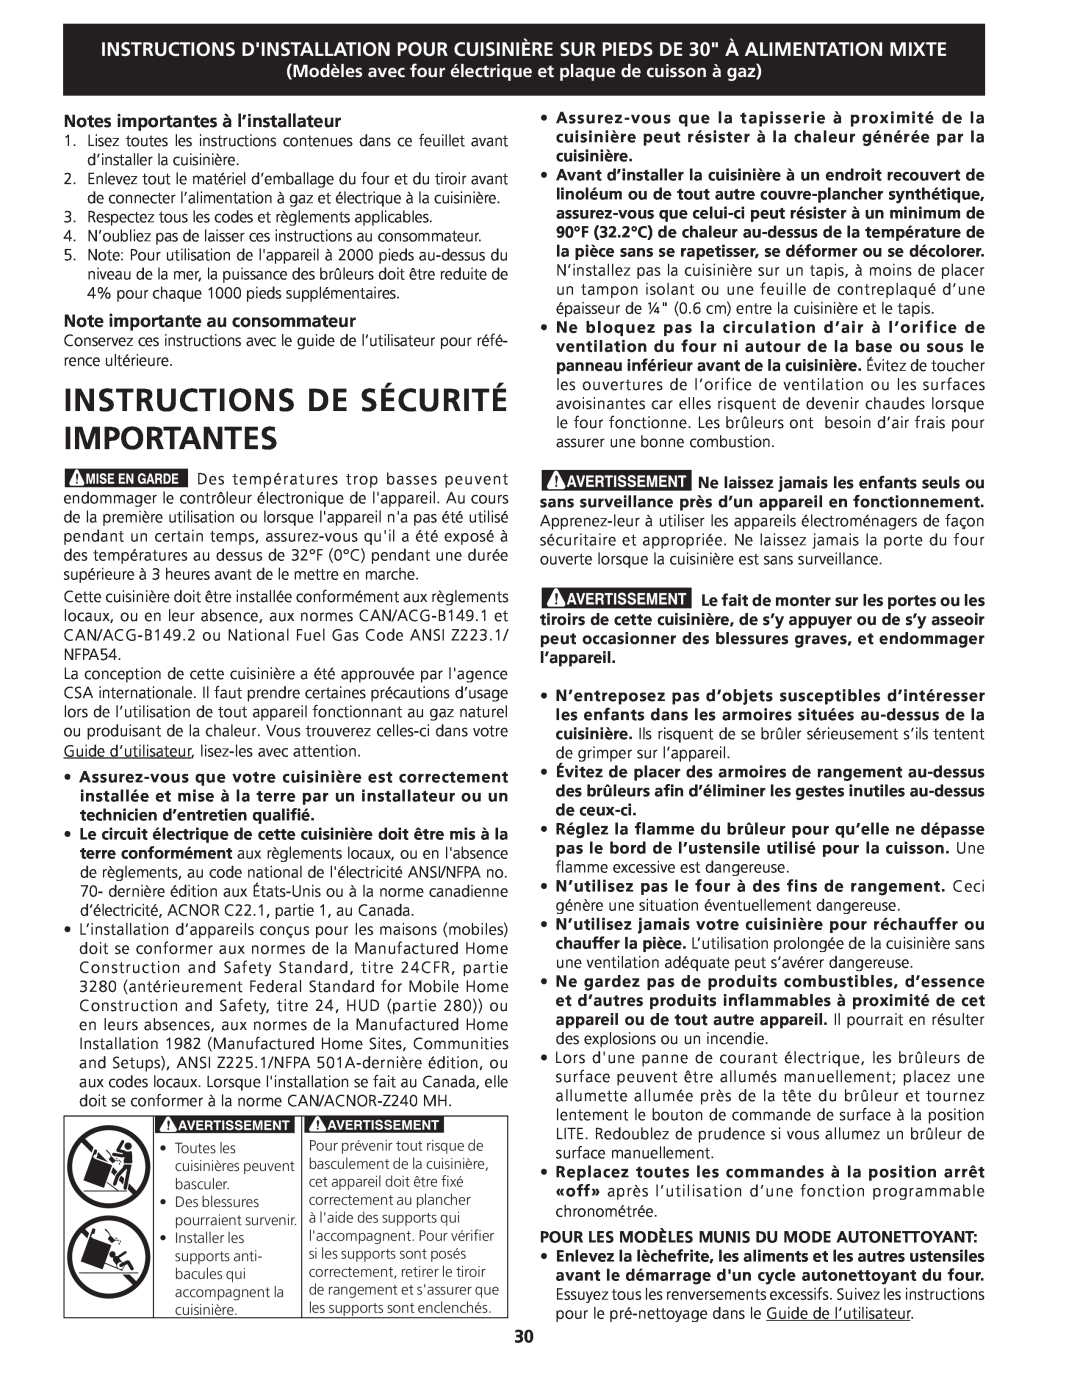 Frigidaire 318201679 (0903), CPDS3085KF Instructions De Sécurité Importantes, Notes importantes à l’installateur 